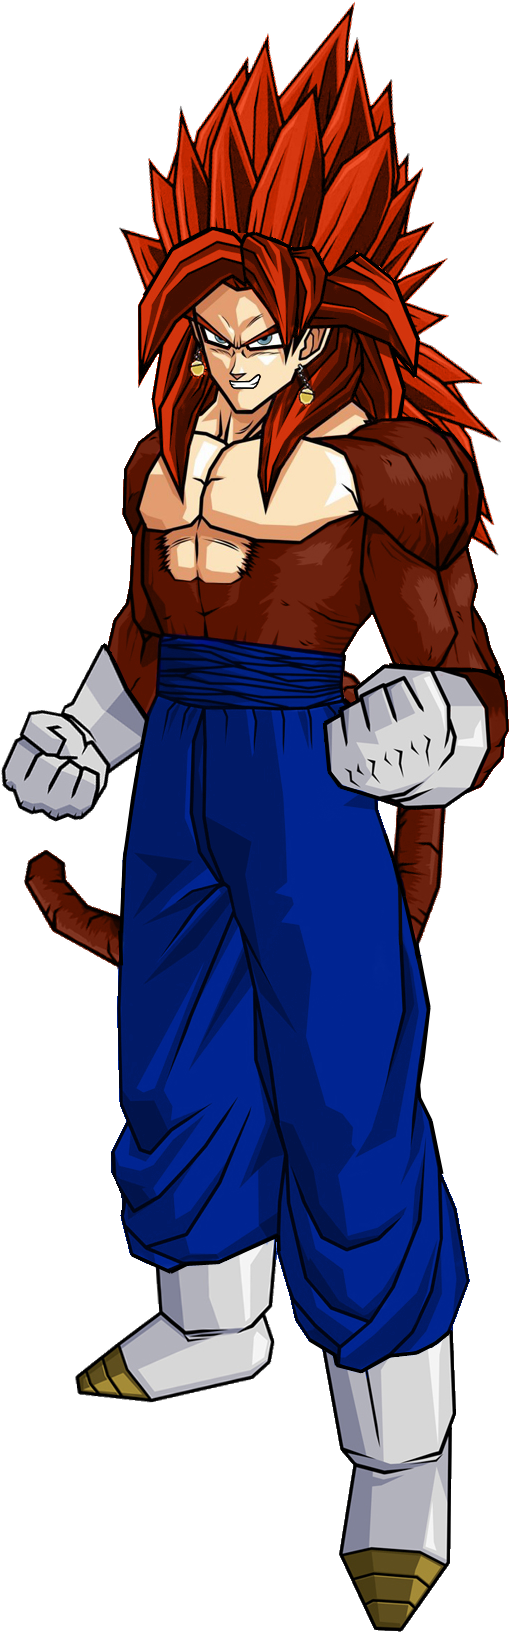 Super Saiyan 4 Vegito | Ultra Dragon Ball Wiki | FANDOM powered by Wikia